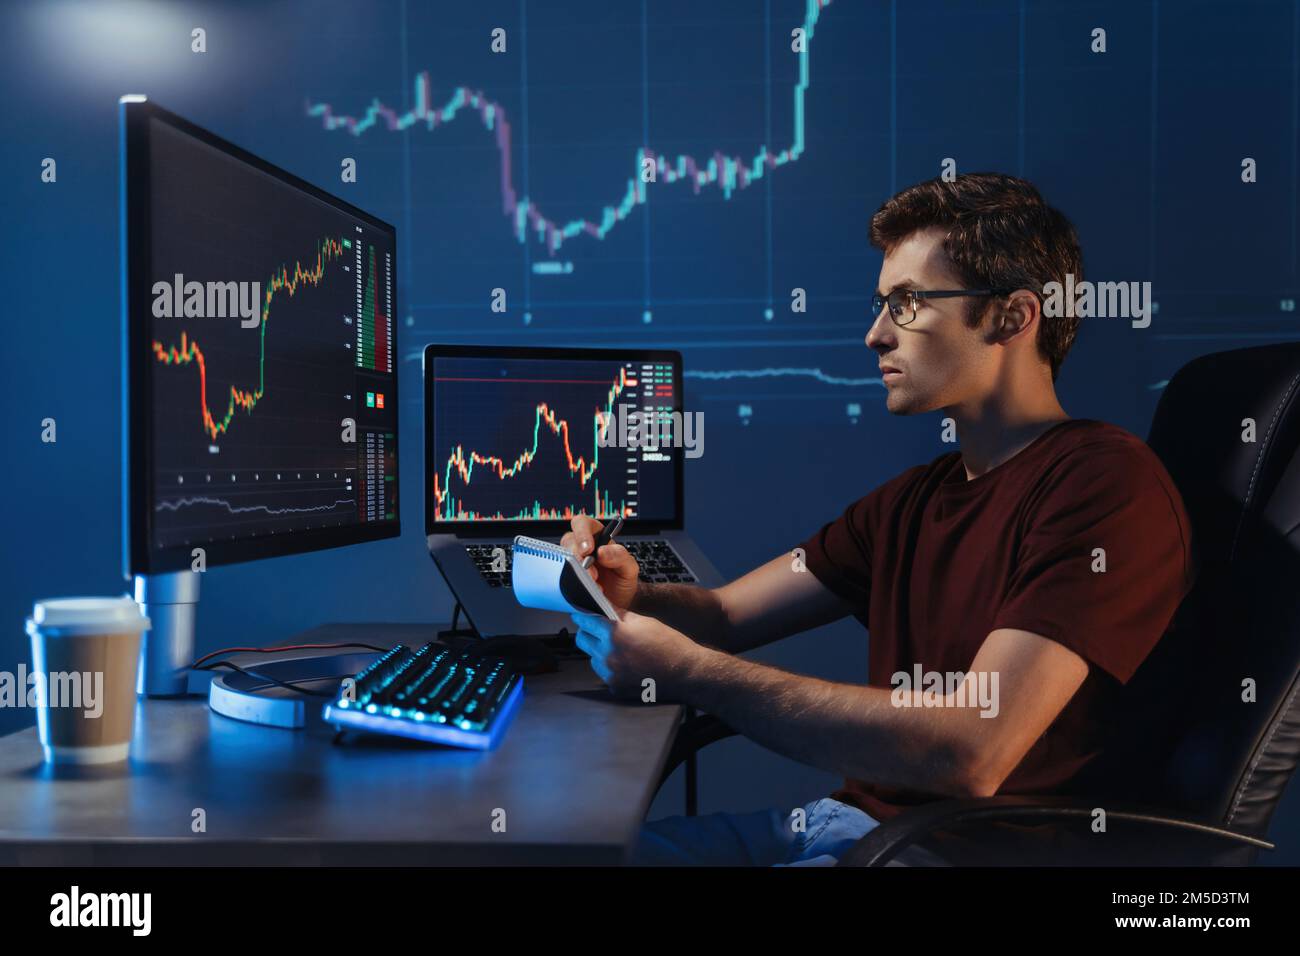 Vue latérale d'un courtier de crypto mâle assis sur son lieu de travail la nuit, mur numérique bleu avec arrière-plan du schéma financier. Trader vérifiant le diagramme de chandelier, prenant des notes. Crypto-monnaie Banque D'Images